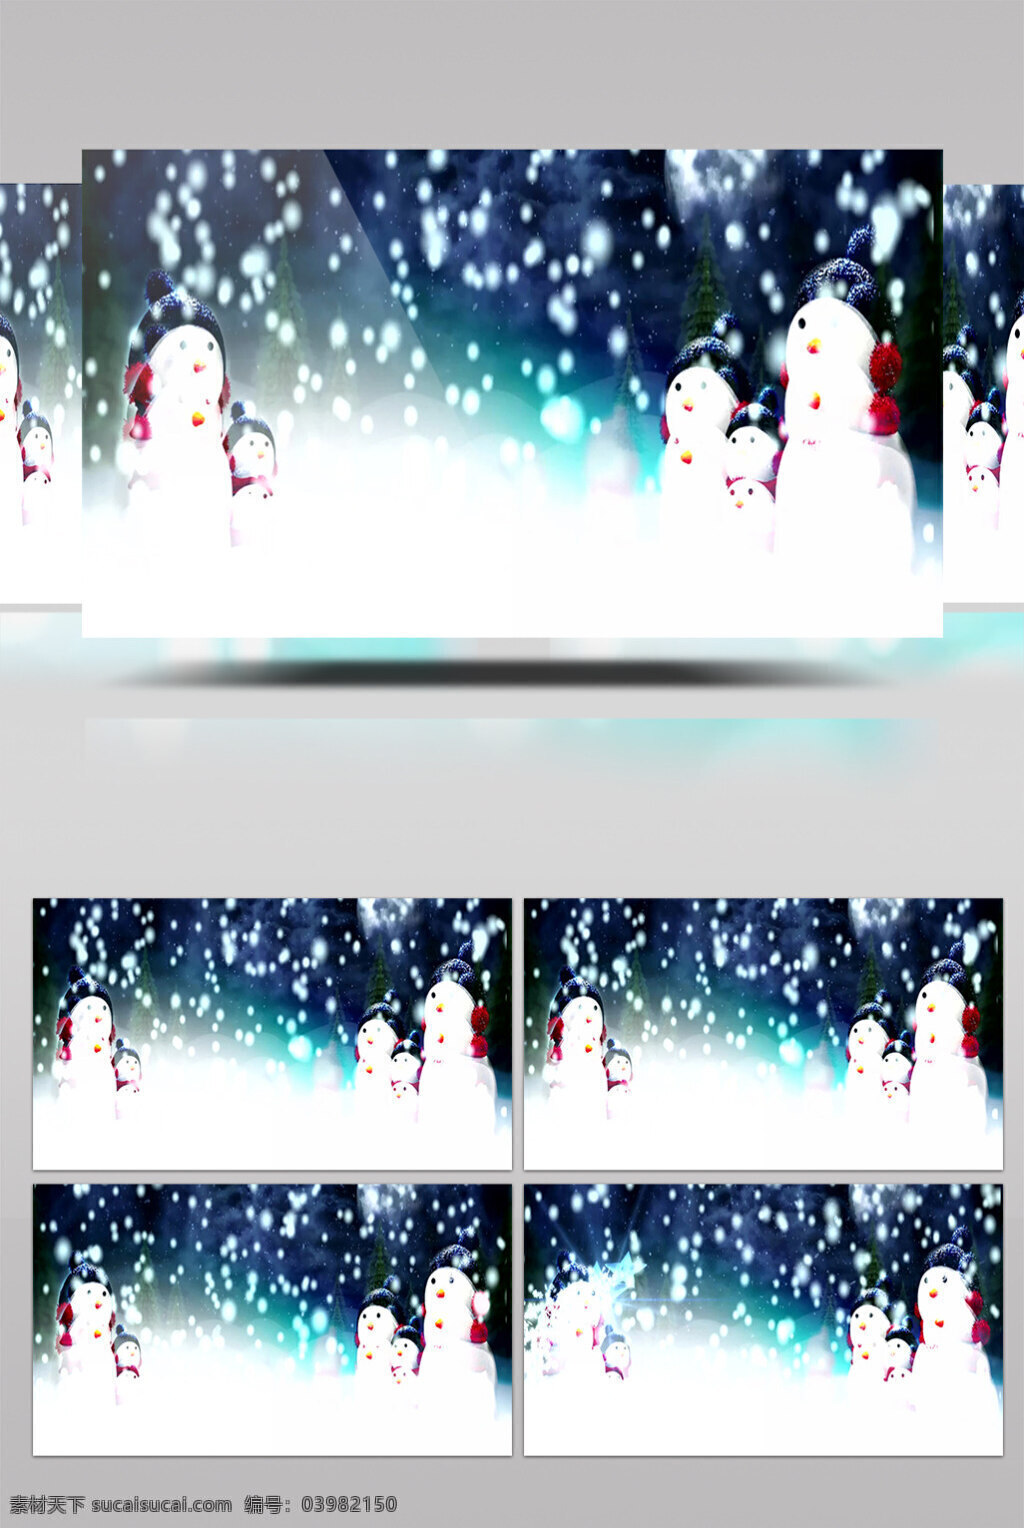 雪人视频素材 白色雪夜 唯美白色 烂漫背景 美丽景色 美景动态背景 高质量 背景 好看背景素材